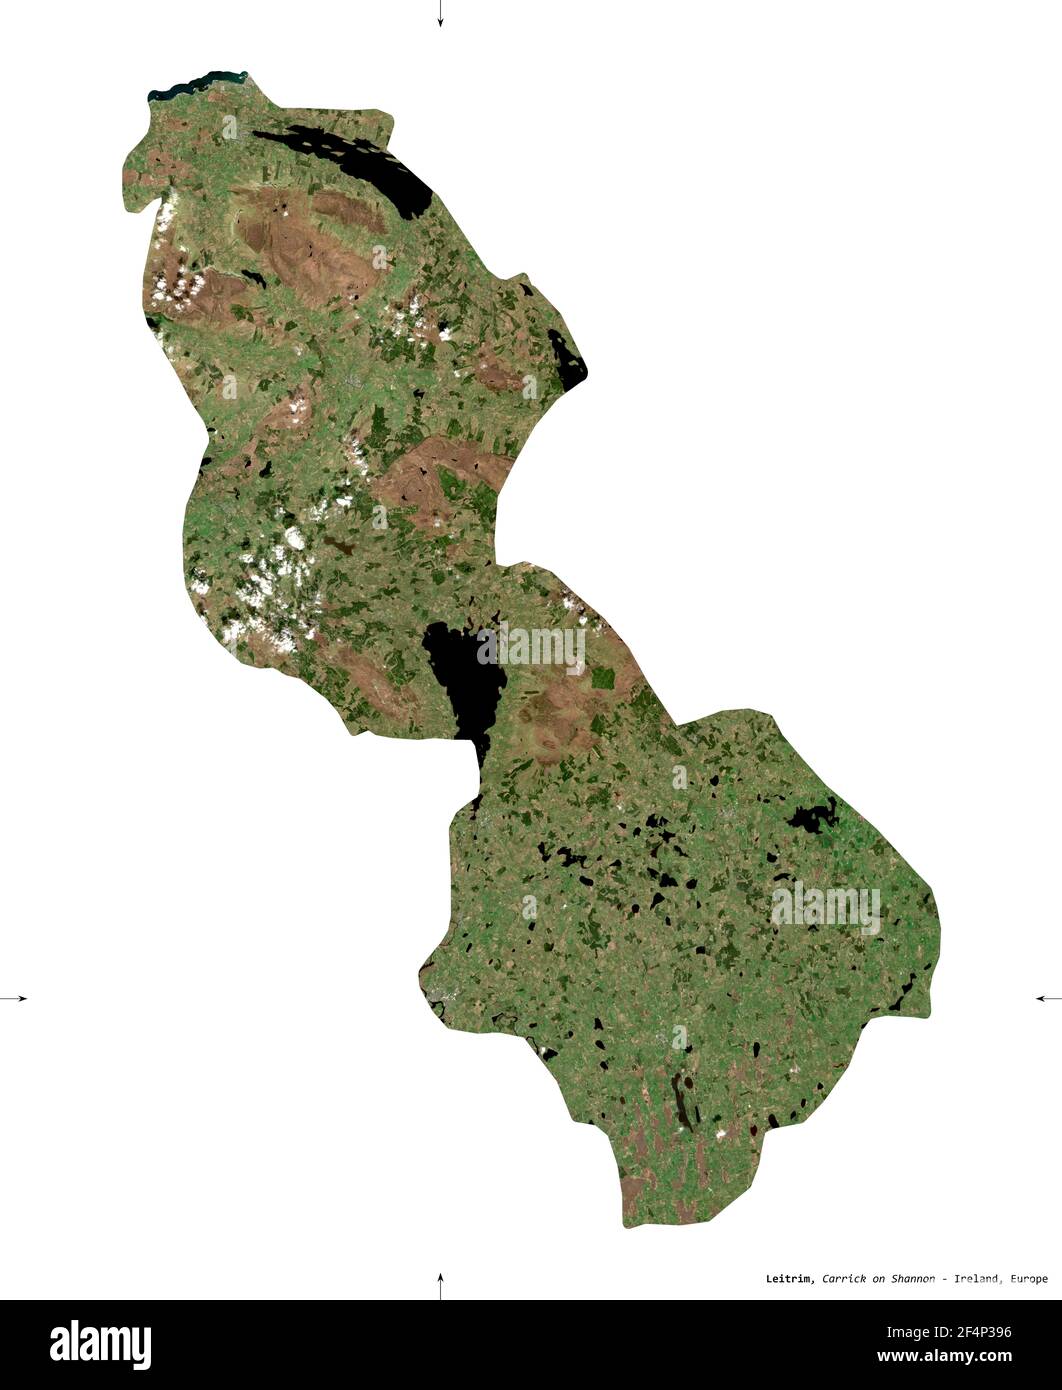 Leitrim, contea d'Irlanda. Immagini satellitari Sentinel-2. Forma isolata su bianco. Descrizione, ubicazione della capitale. Contiene Copernicus modificato Foto Stock